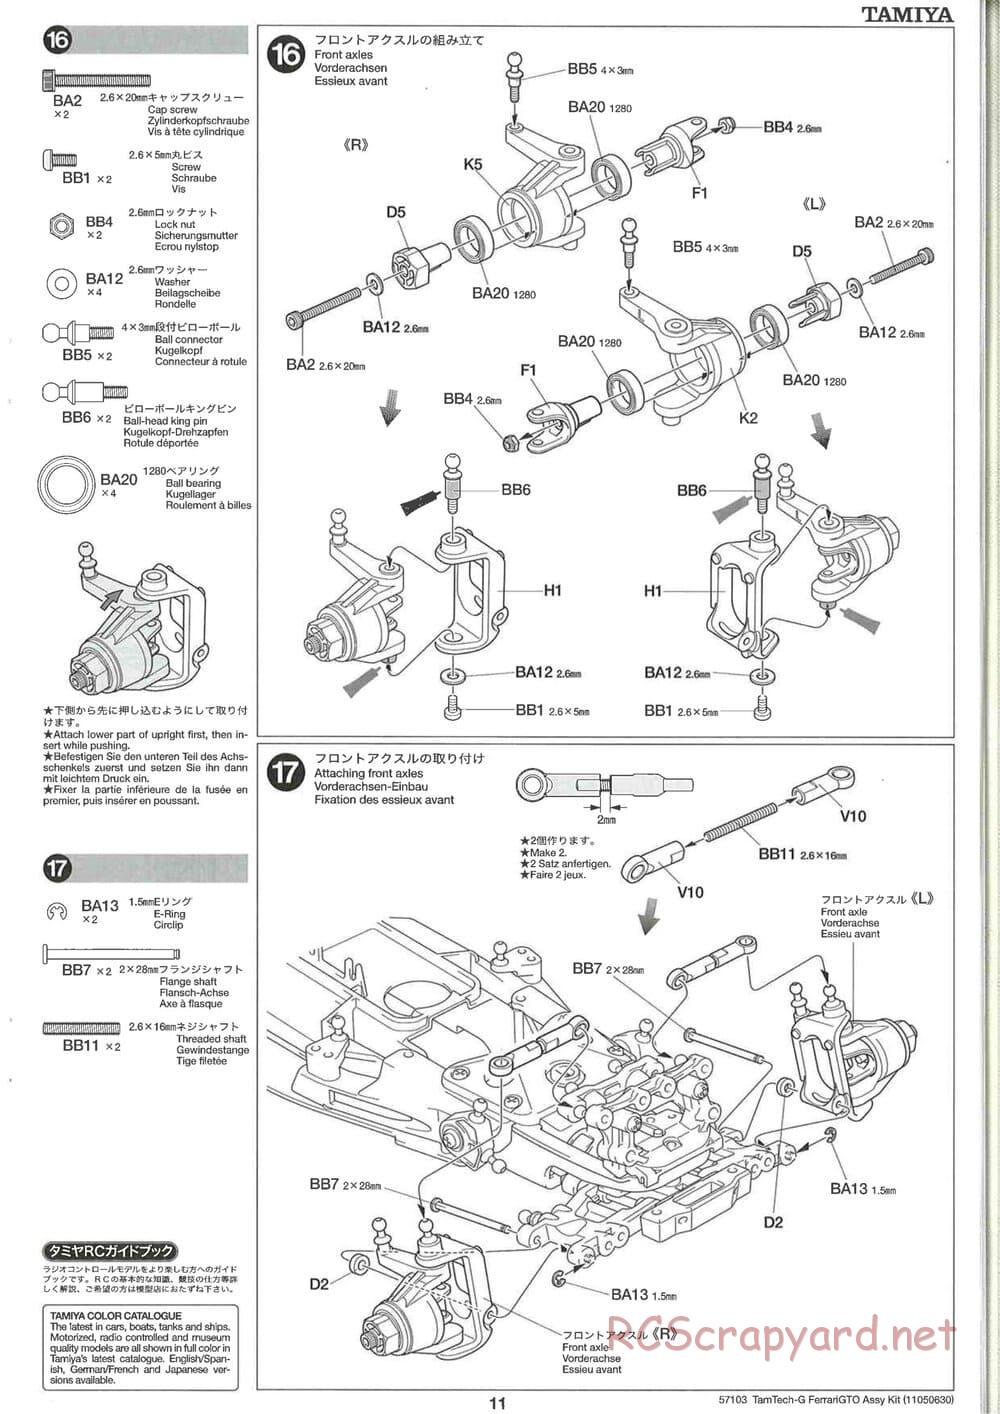 Tamiya - Ferrari 288 GTO - GT-01 Chassis - Manual - Page 11